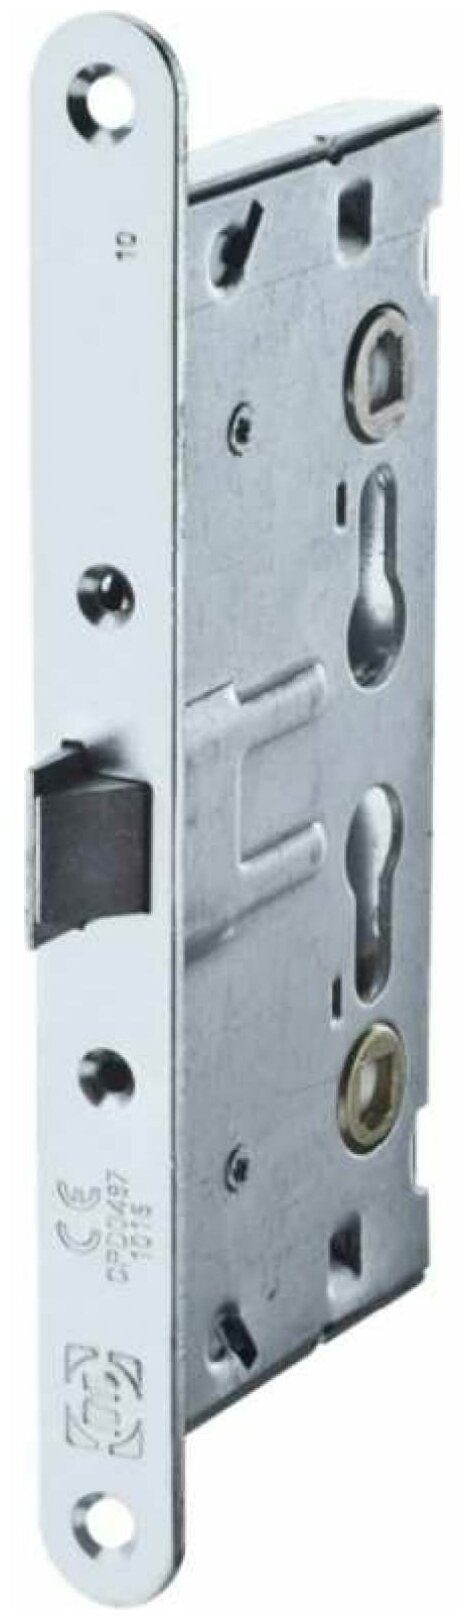 Корпус огнестойкого замка DL 1901/65mm PZ ZN, Анти-паник /75400/ Doorlock